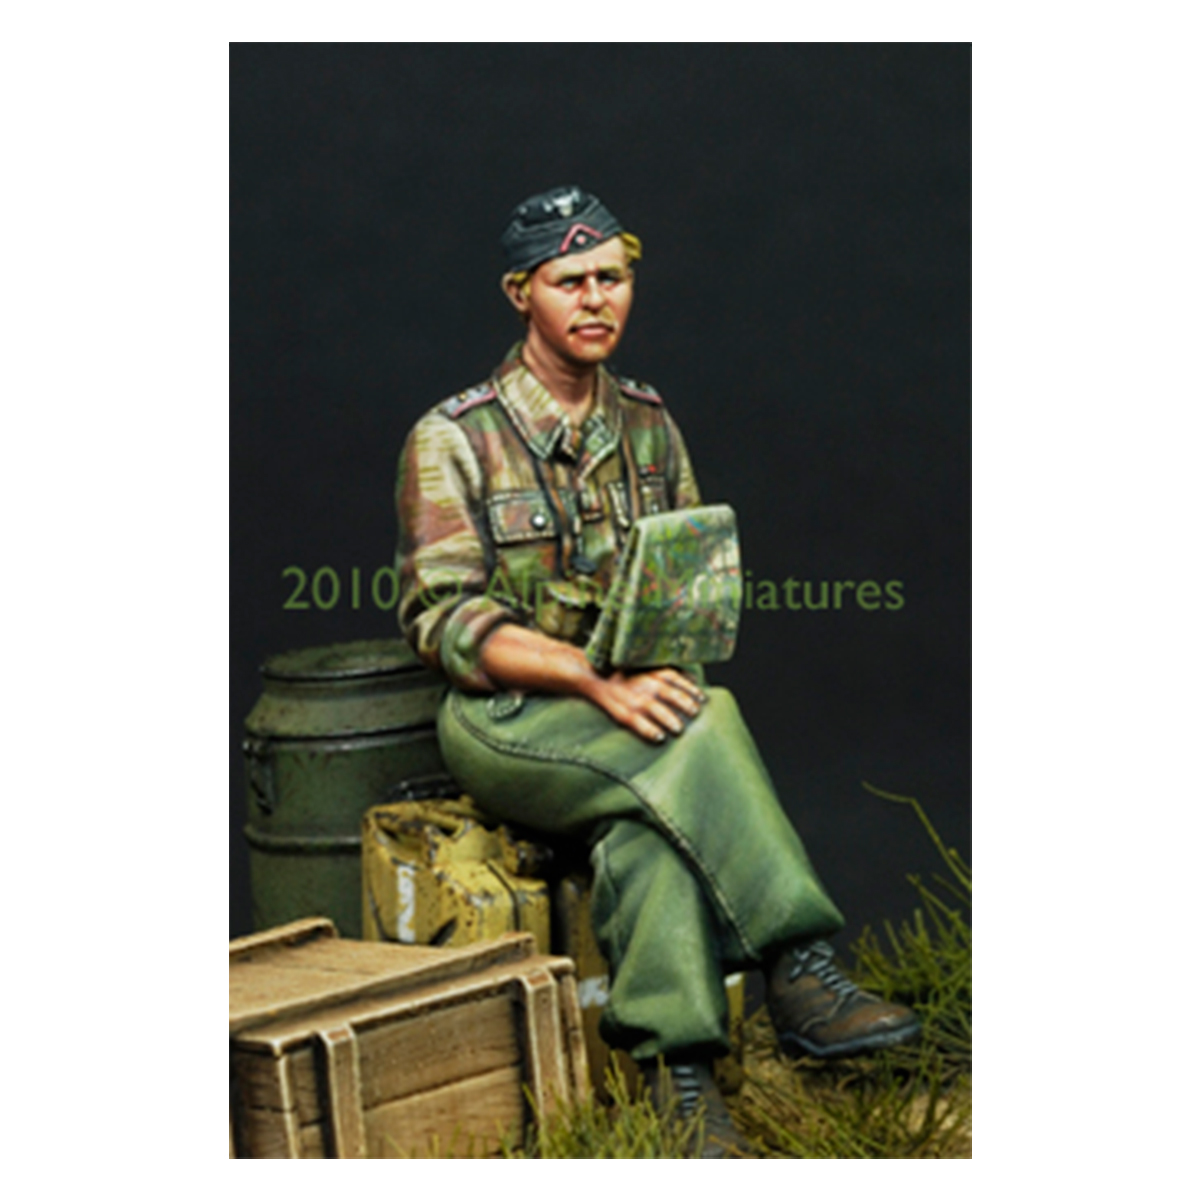 Alpine Miniatures – German Panzer Officer in Summer 1/35